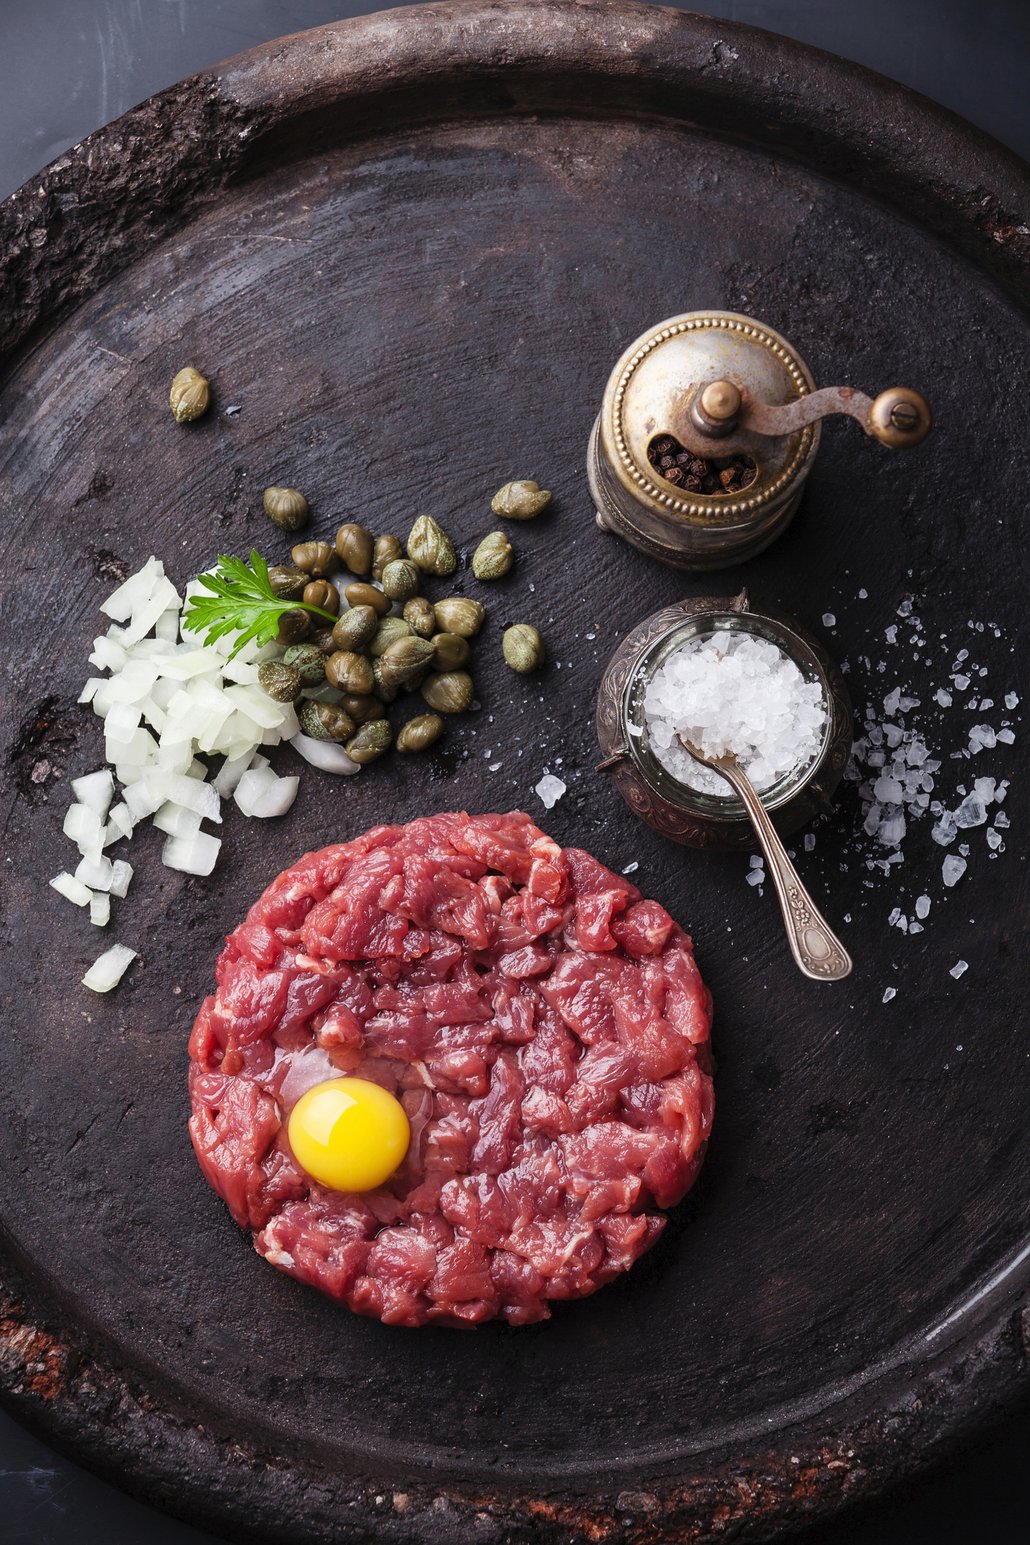 Tatarák můžete podávat namíchaný nebo nechat každou z ingrediencí ve vlastní mističce, aby si maso mohl každý ochutit sám